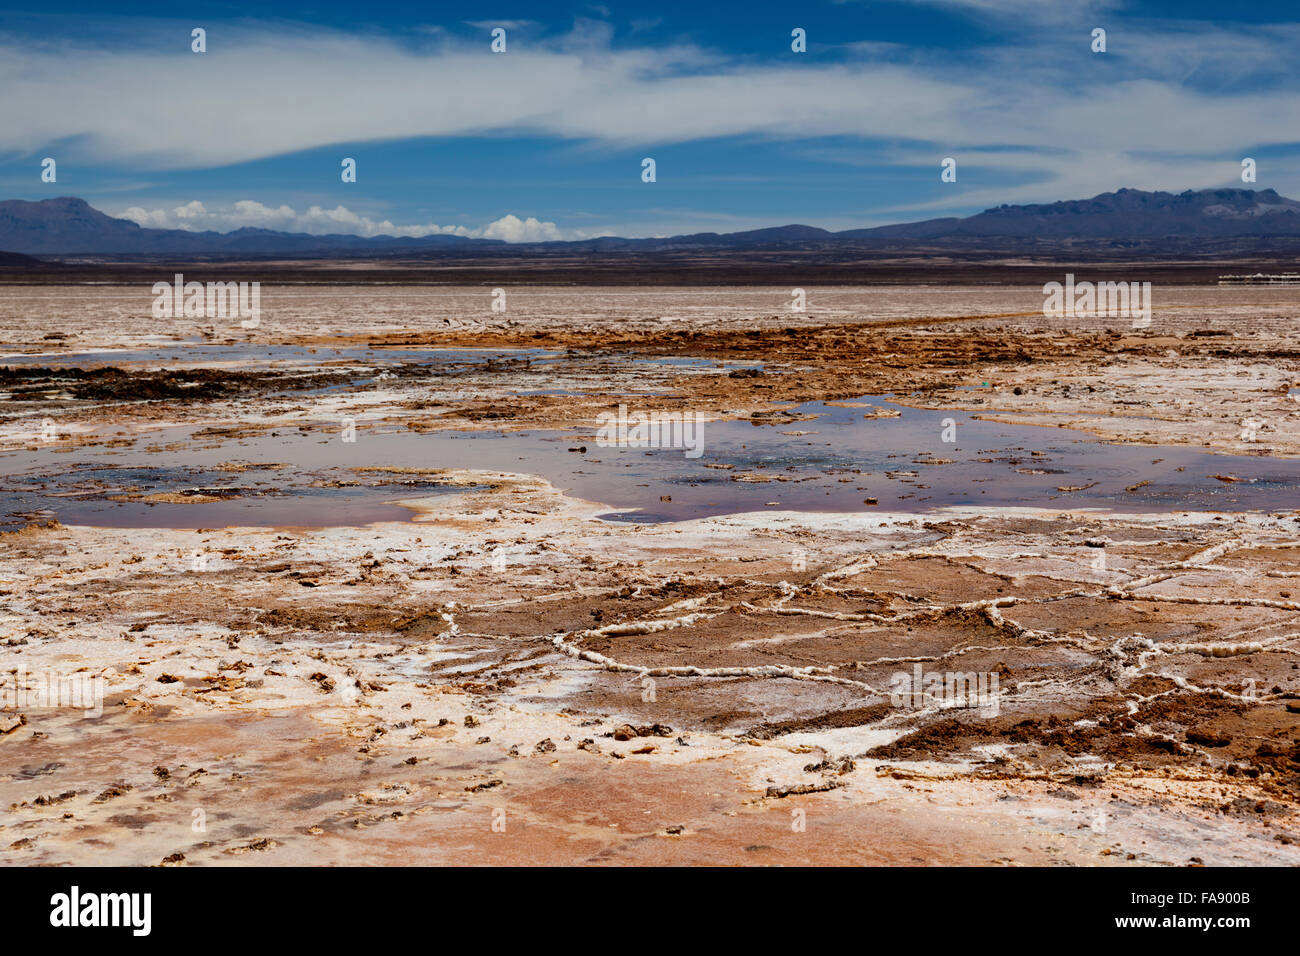 Ojos del Salar at the Salar de Uyuni, salt flats on the Bolivian Altiplano, near Uyuni, Potosí Department, Bolivia Stock Photo